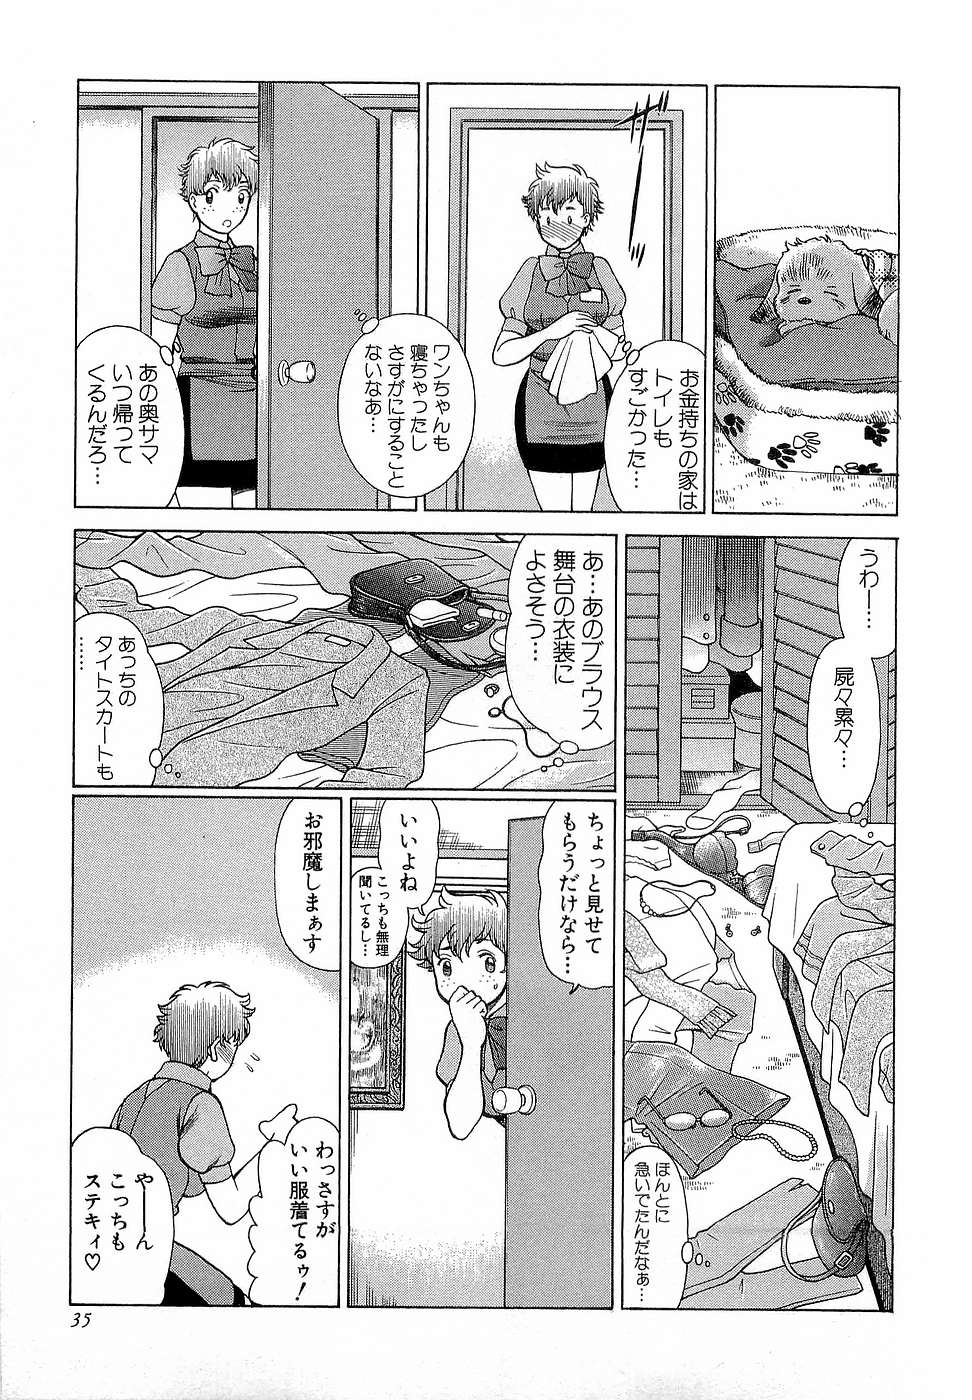 [Tamaki Nozomu] Nanairo Karen x3 Cosplay Complex page 36 full